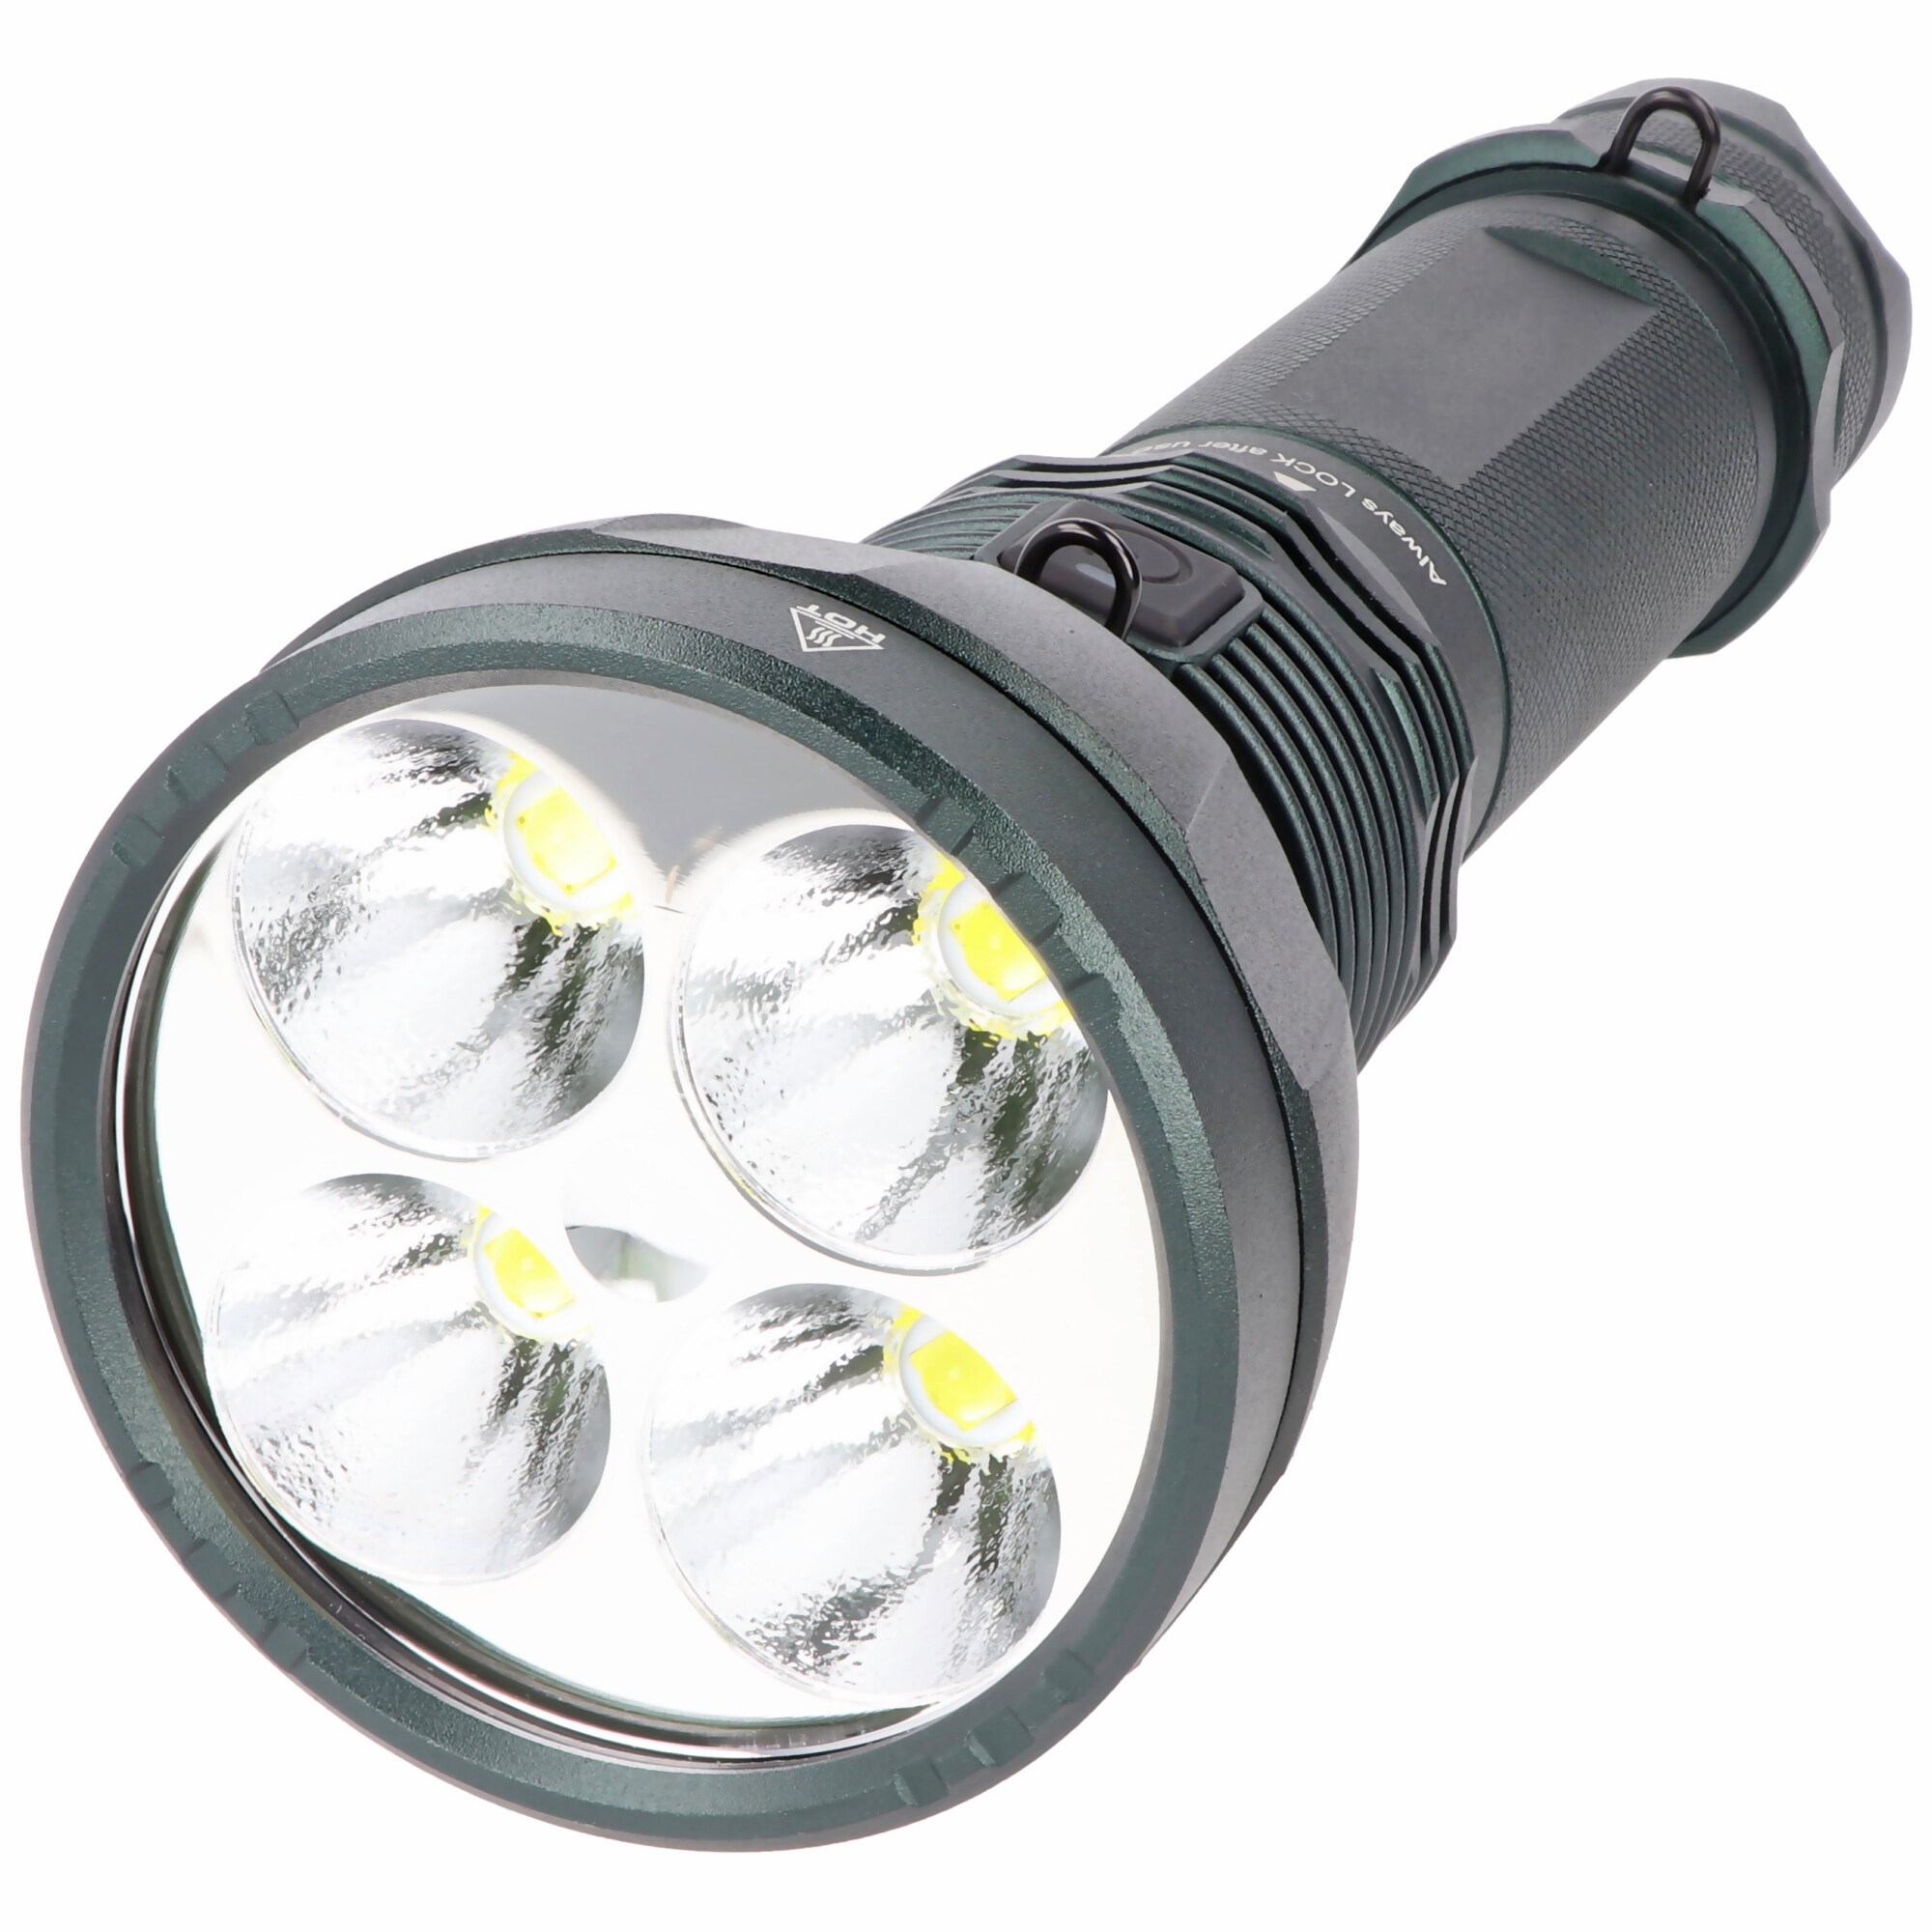 11600 lümen LED el feneri, 525 metreye kadar aydınlatma aralığı ile avcılık  ve hobi için ideal LED el feneri